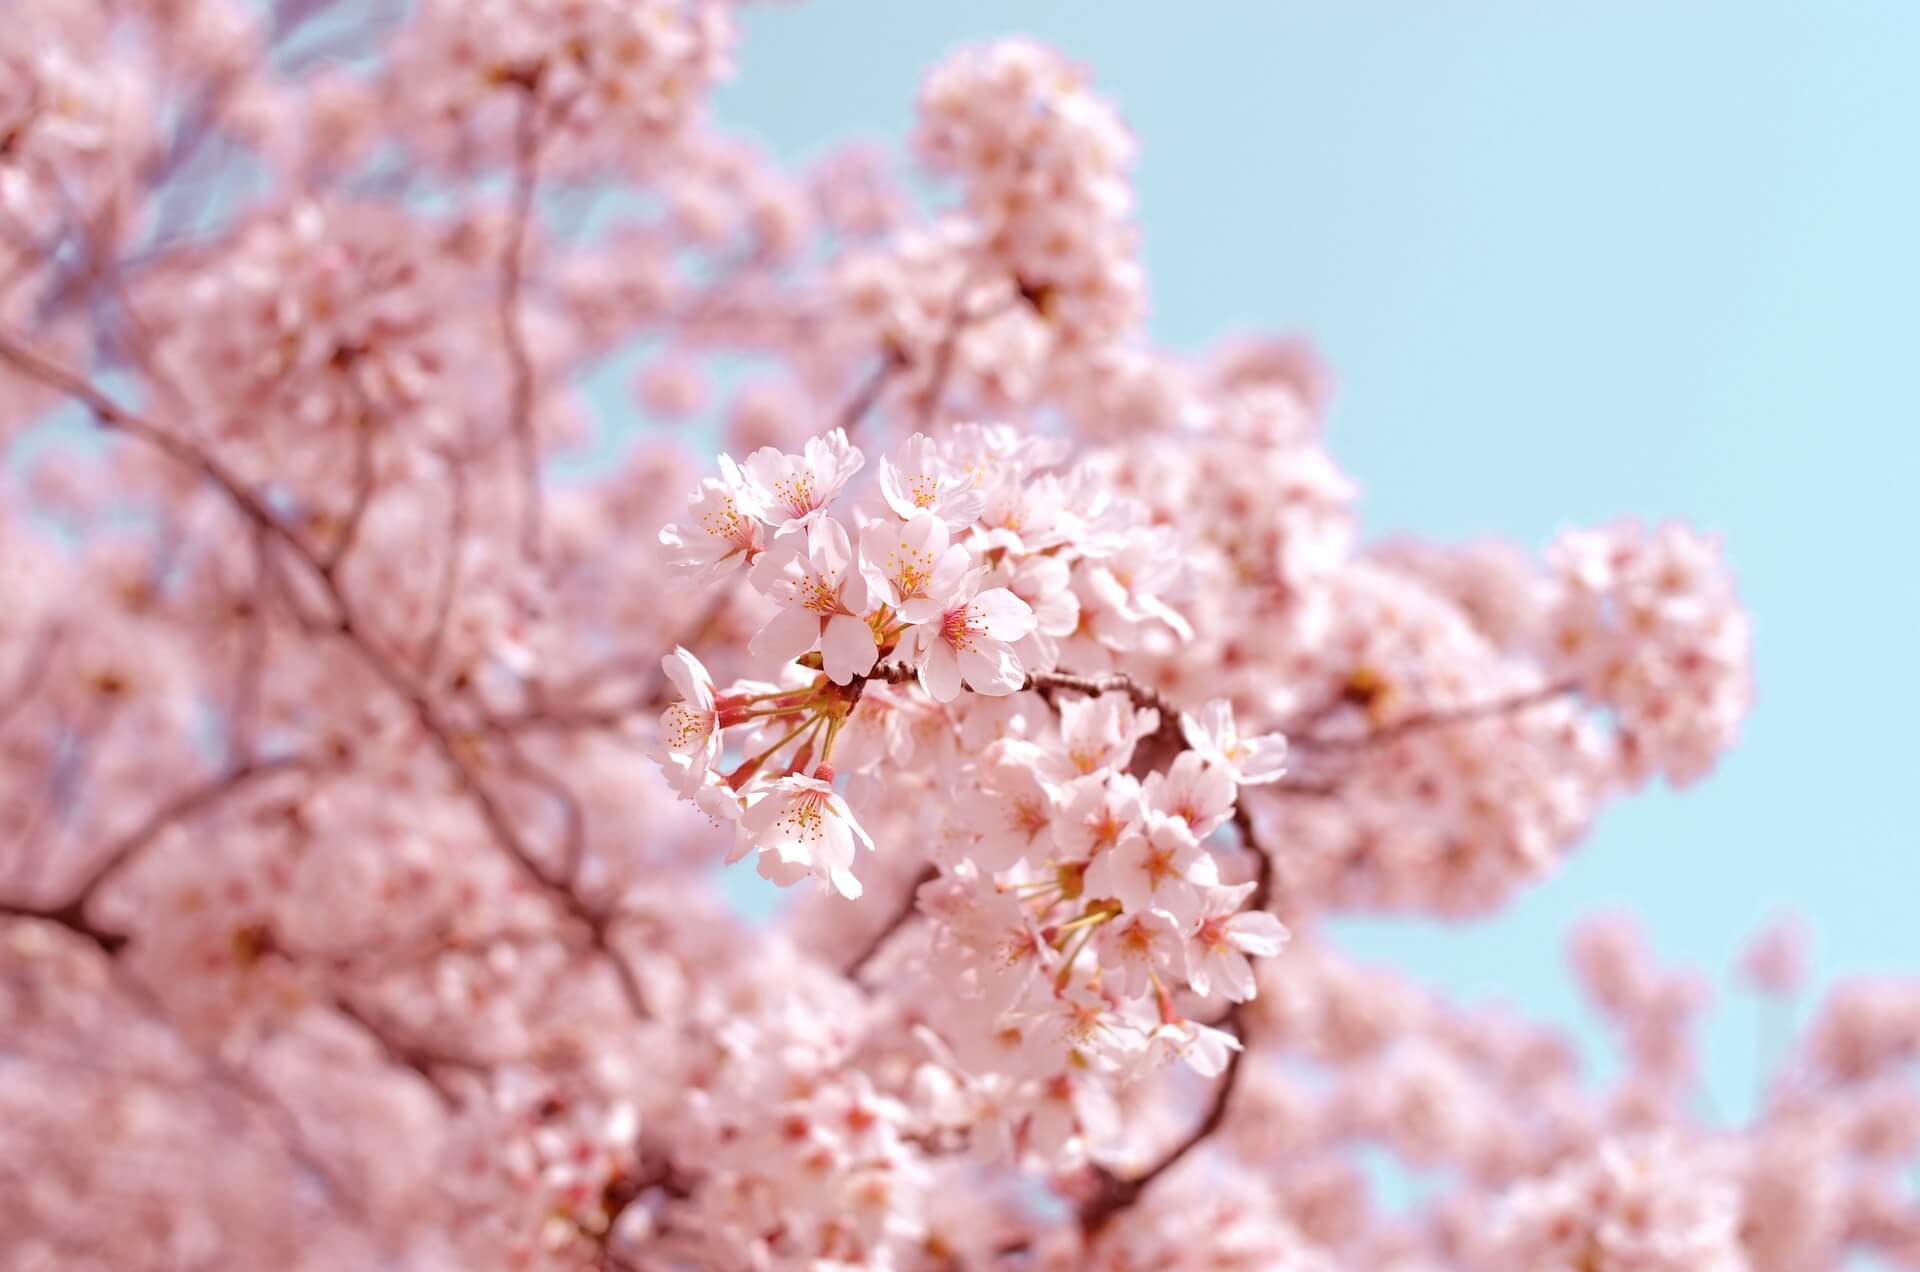 Billede af smukt forårstræ med lyserøde blomster